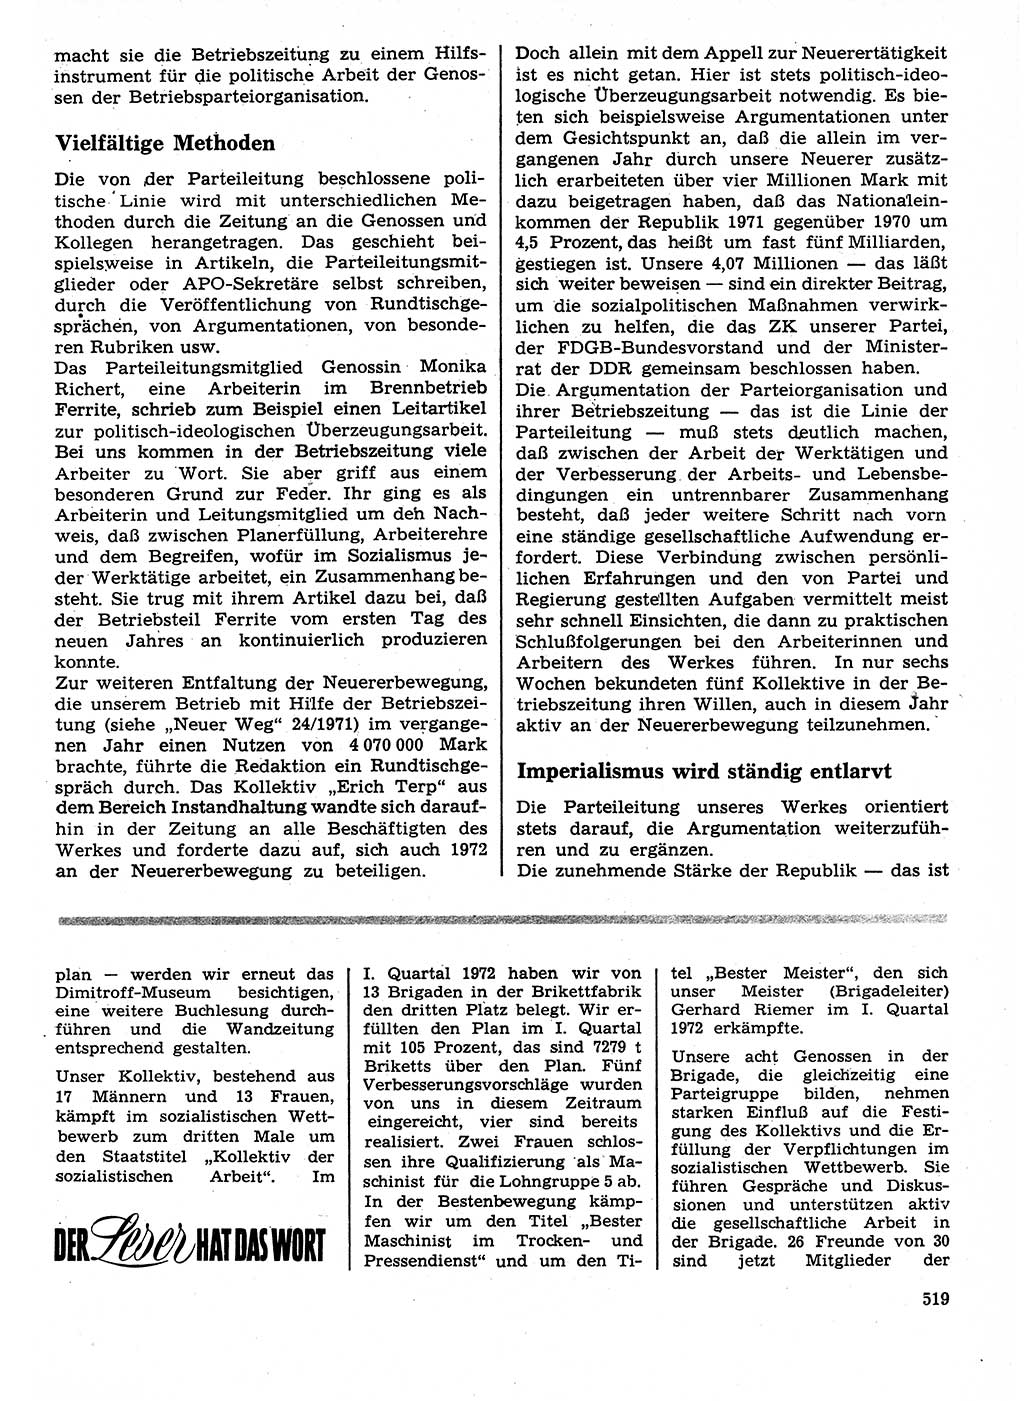 Neuer Weg (NW), Organ des Zentralkomitees (ZK) der SED (Sozialistische Einheitspartei Deutschlands) für Fragen des Parteilebens, 27. Jahrgang [Deutsche Demokratische Republik (DDR)] 1972, Seite 519 (NW ZK SED DDR 1972, S. 519)